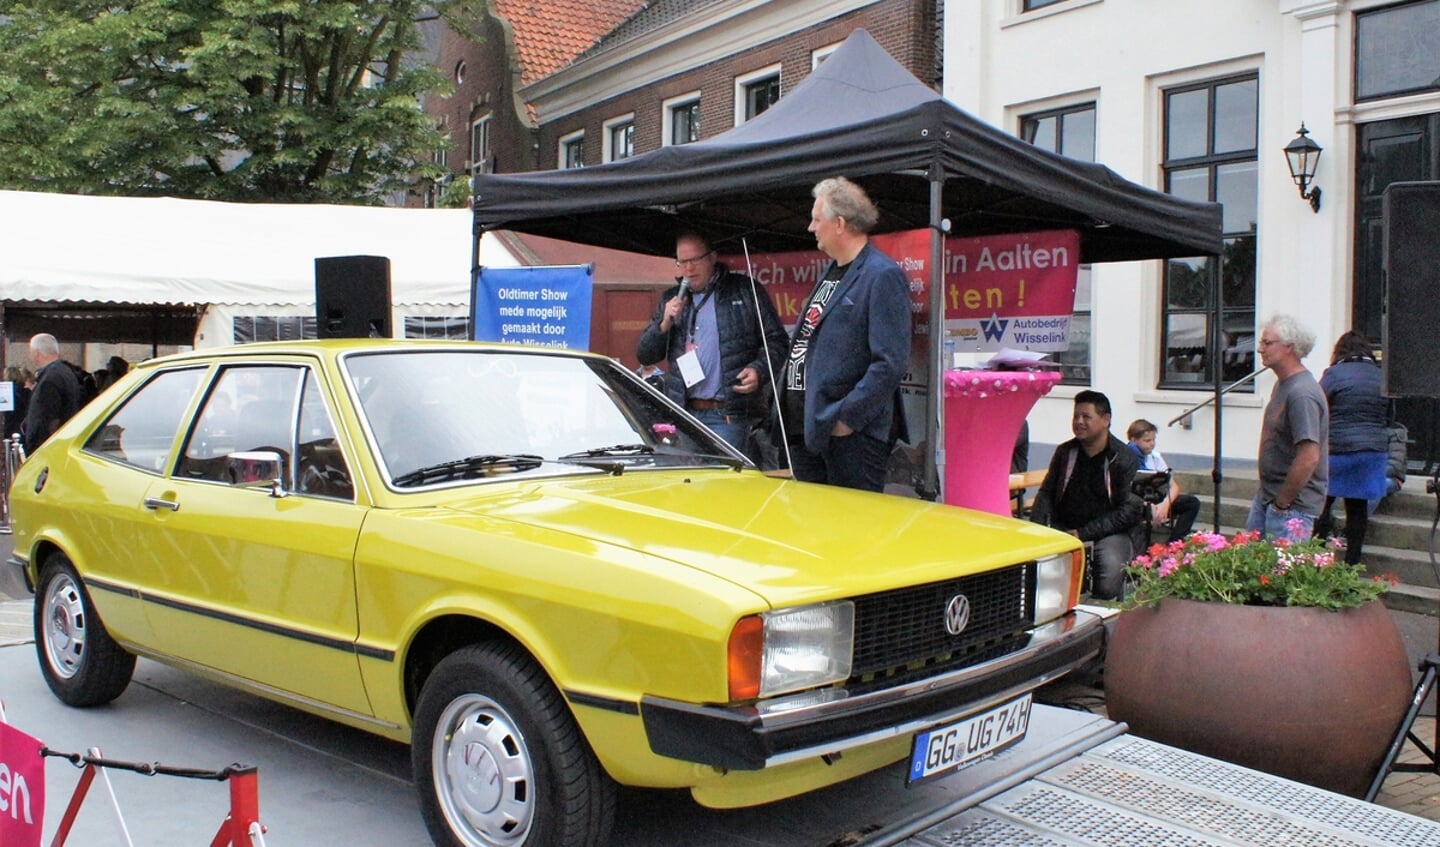 Oldtimer Audi op Meifeest in Aalten. Foto: PR